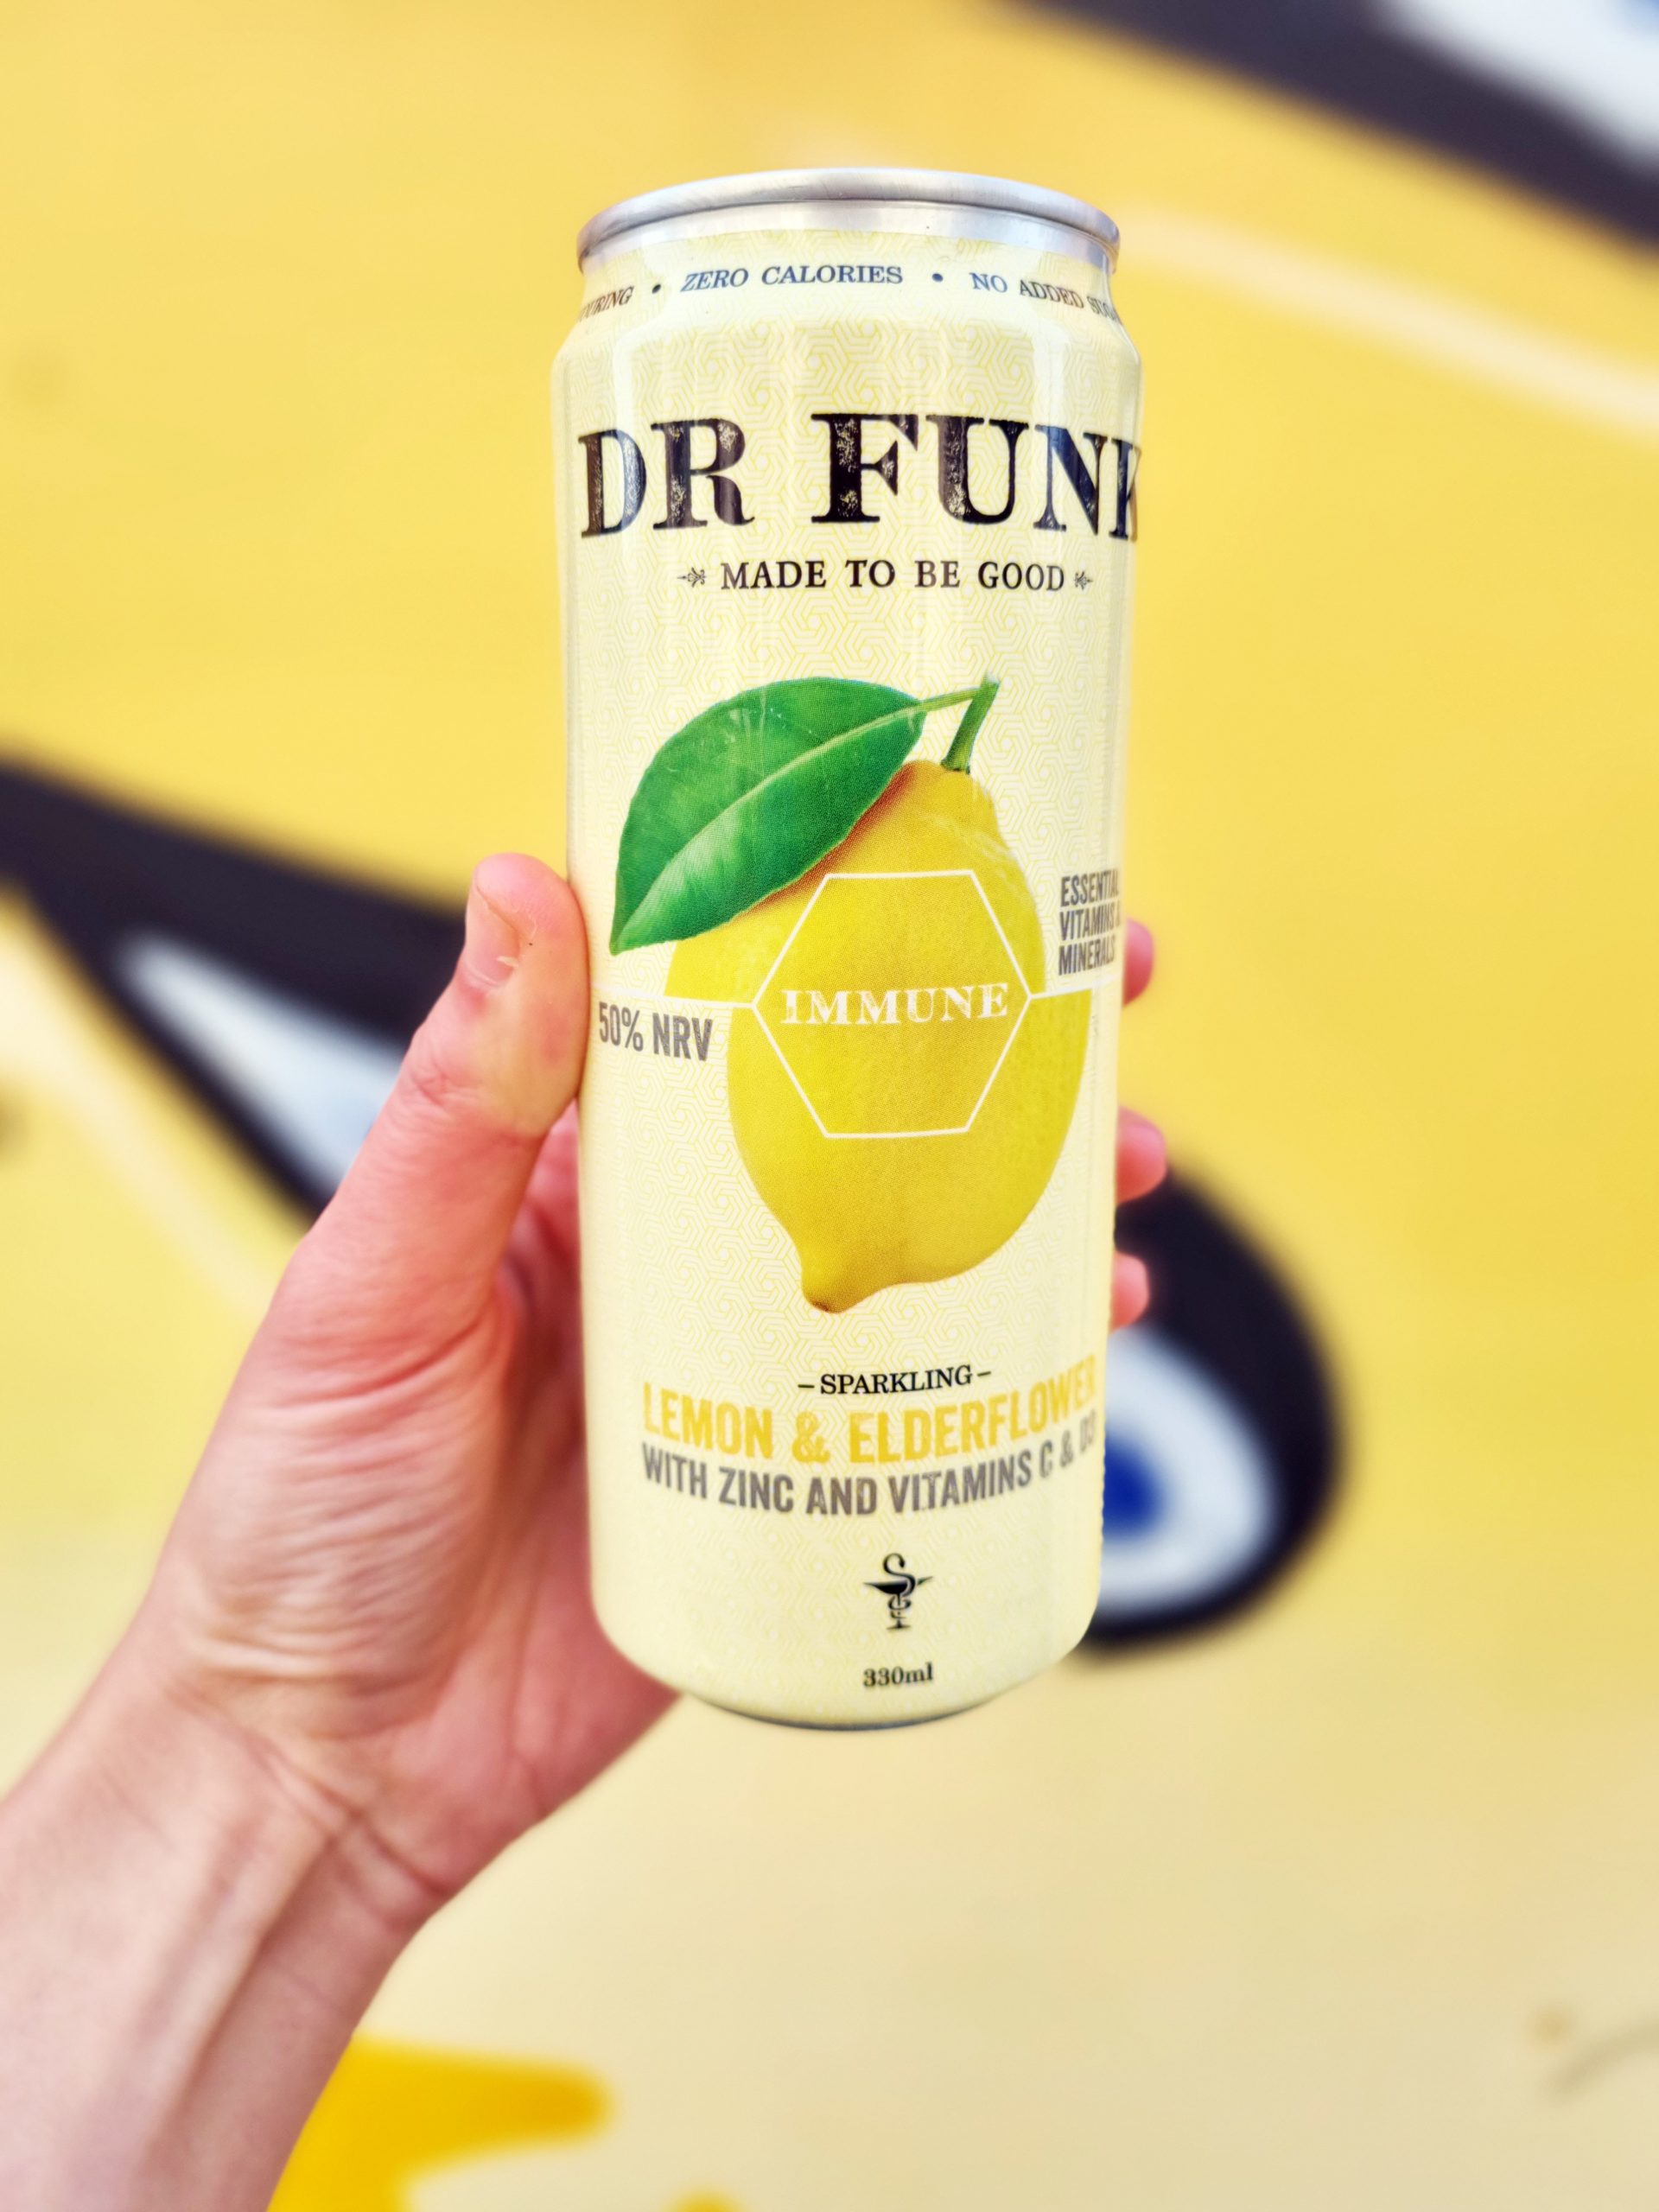 <img src="dr.jpg" alt="dr funk lemon colourful veganuary drink"/> 